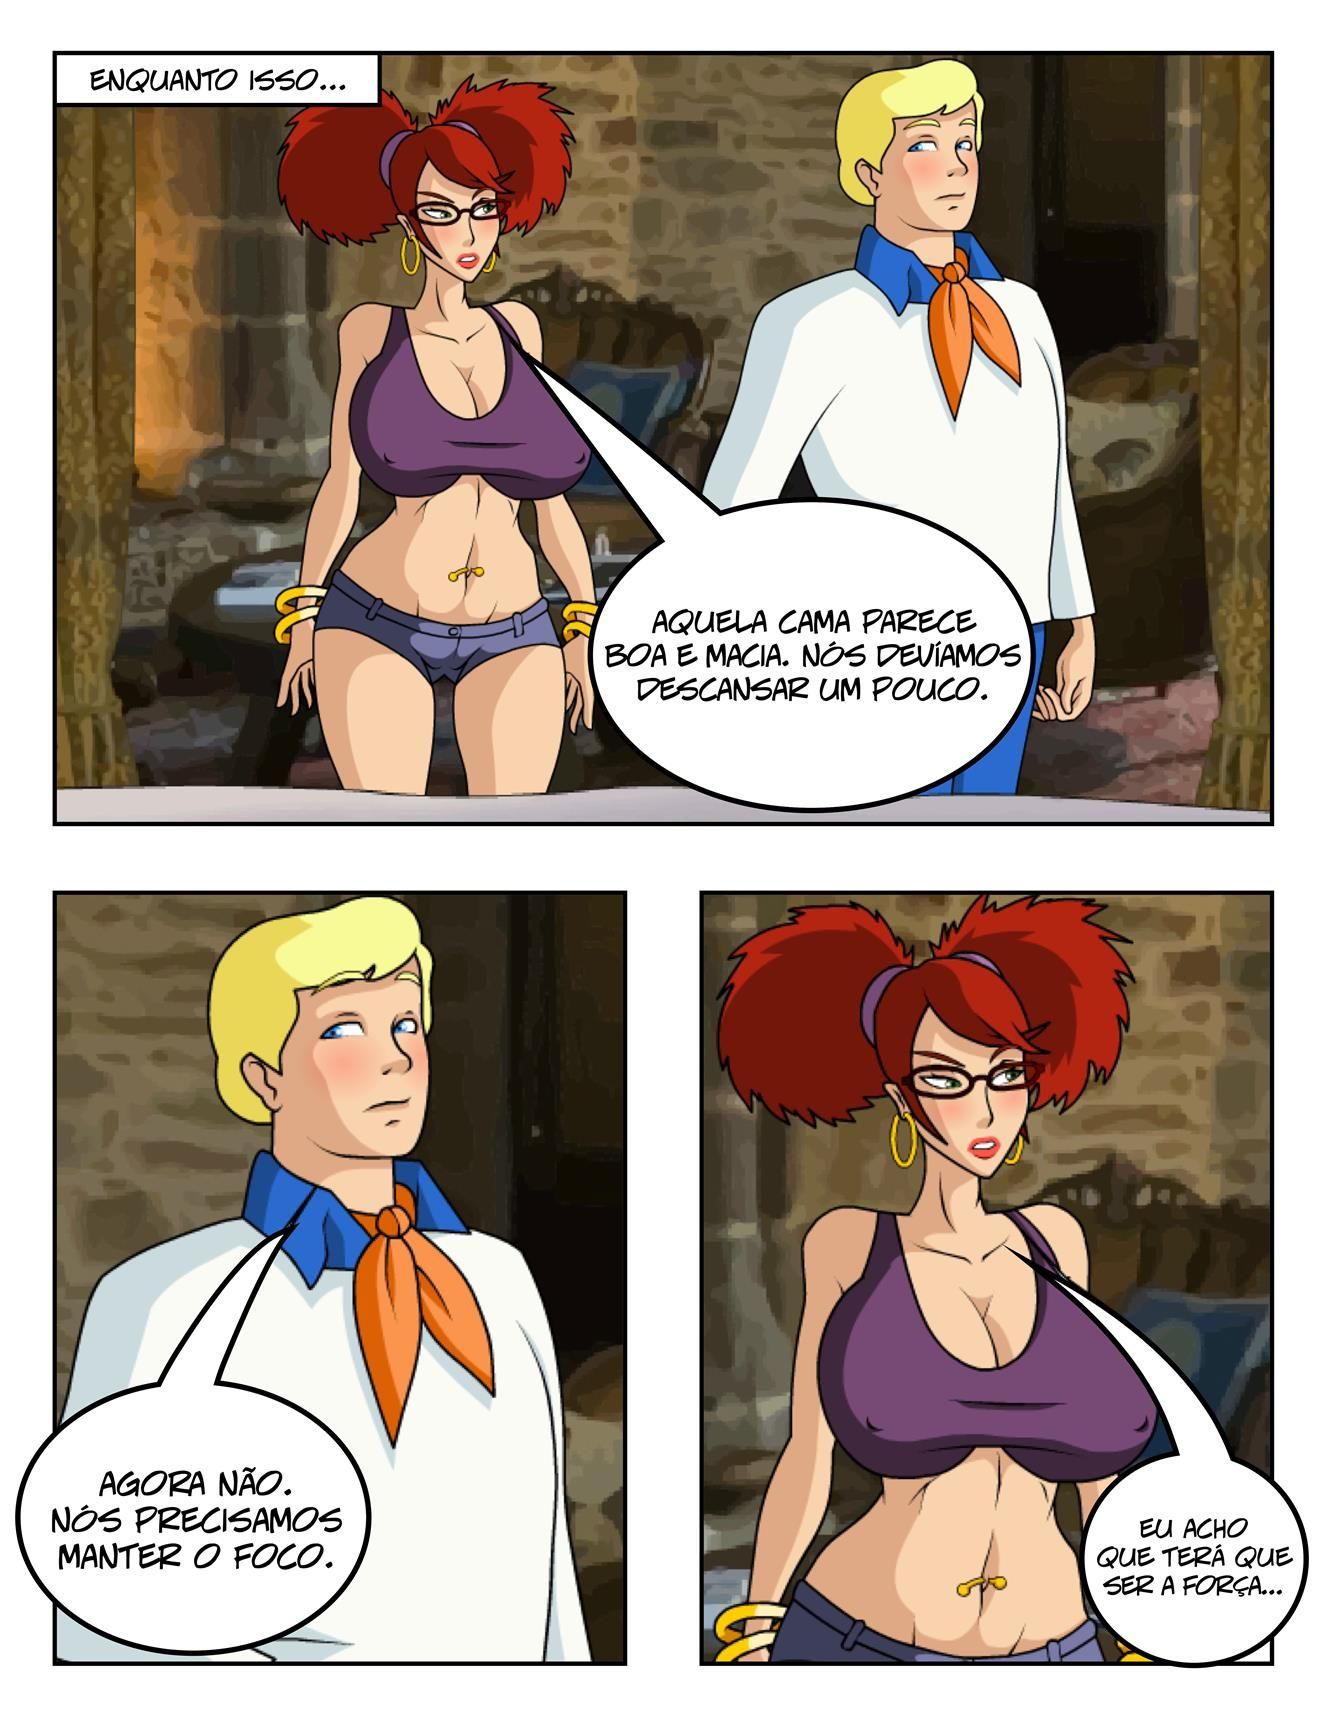 Scooby Doo: Velma precisa de leitinho - Foto 15